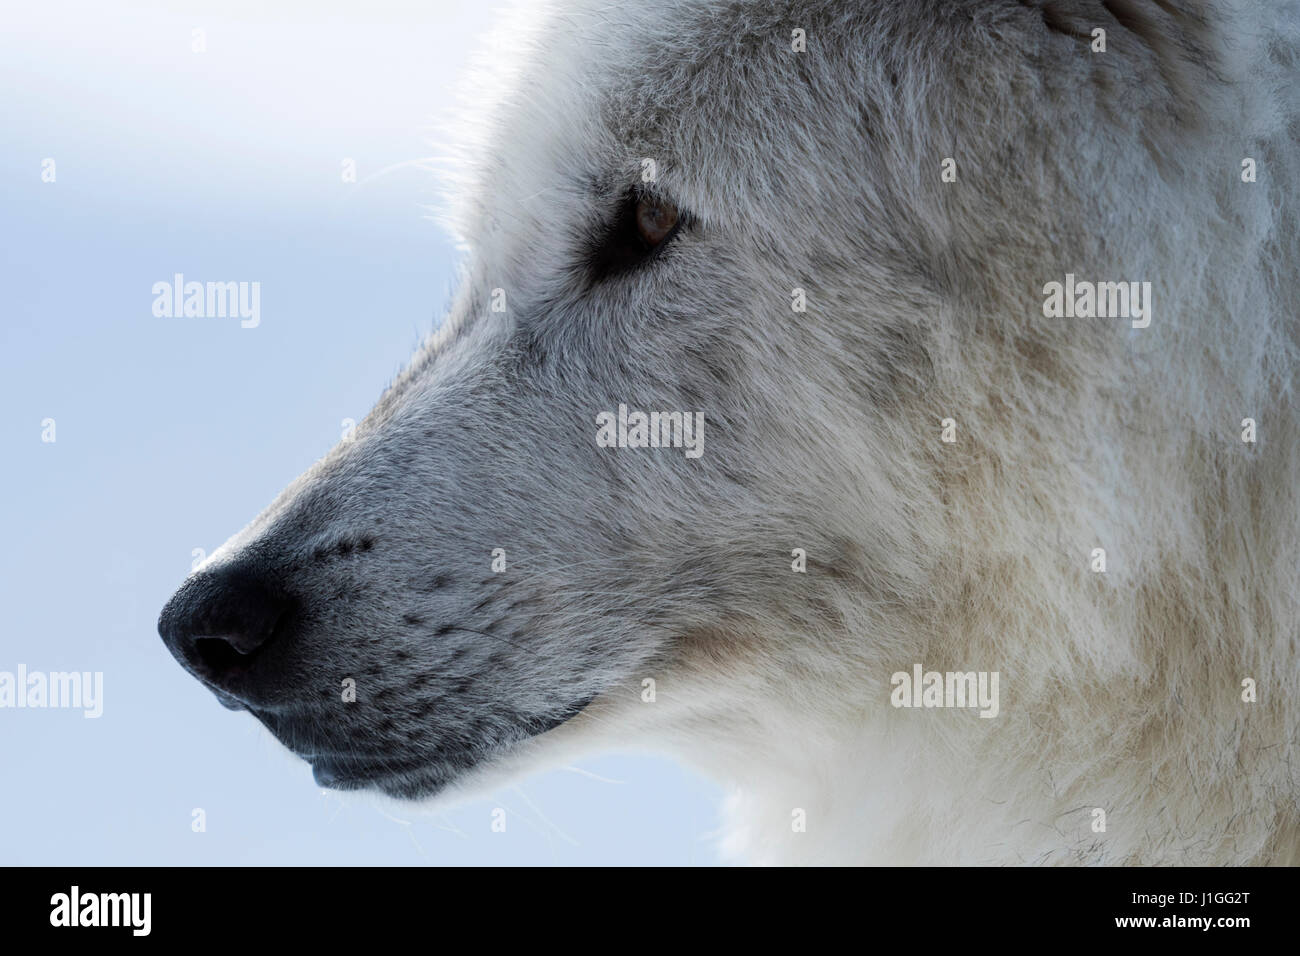 / Grauwolf de loup gris (Canis lupus) en hiver, gros plan, très gros plan, les yeux d'un loup, région de Yellowstone, Montana, USA. Banque D'Images